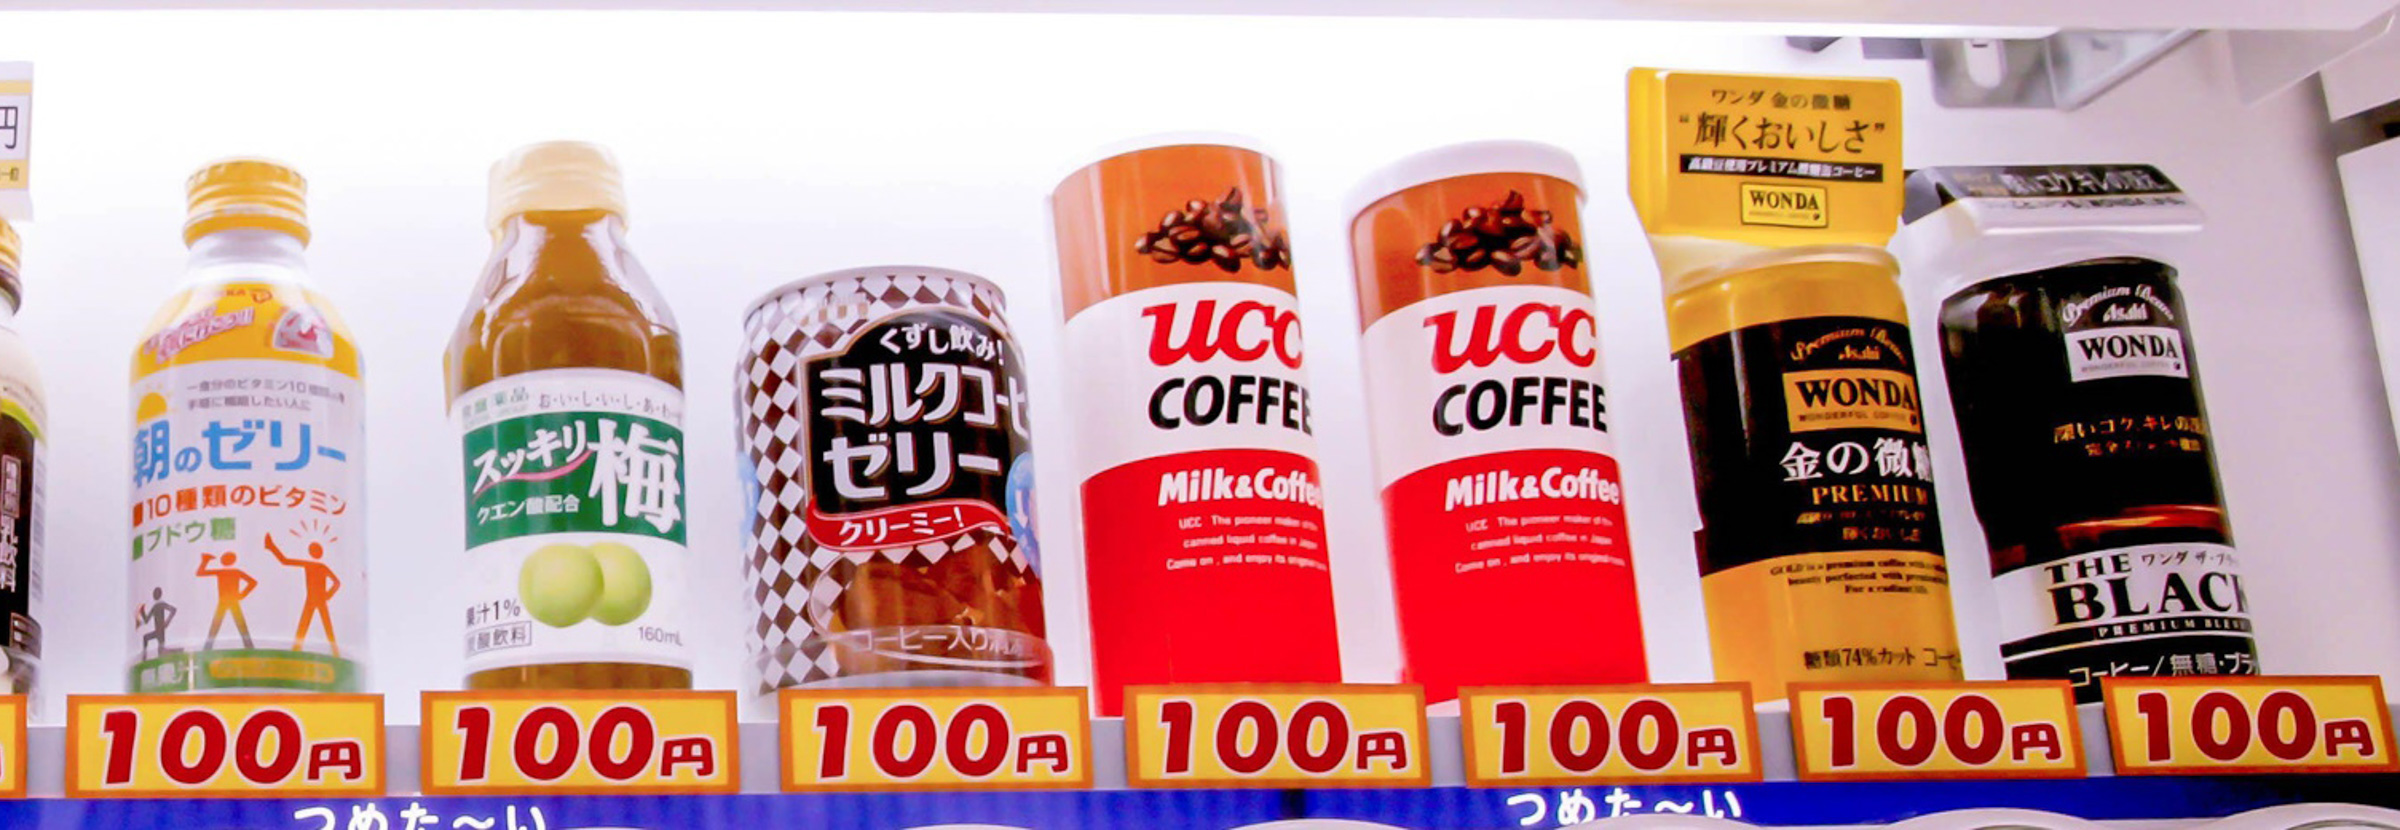 日本の缶コーヒーの品揃え。